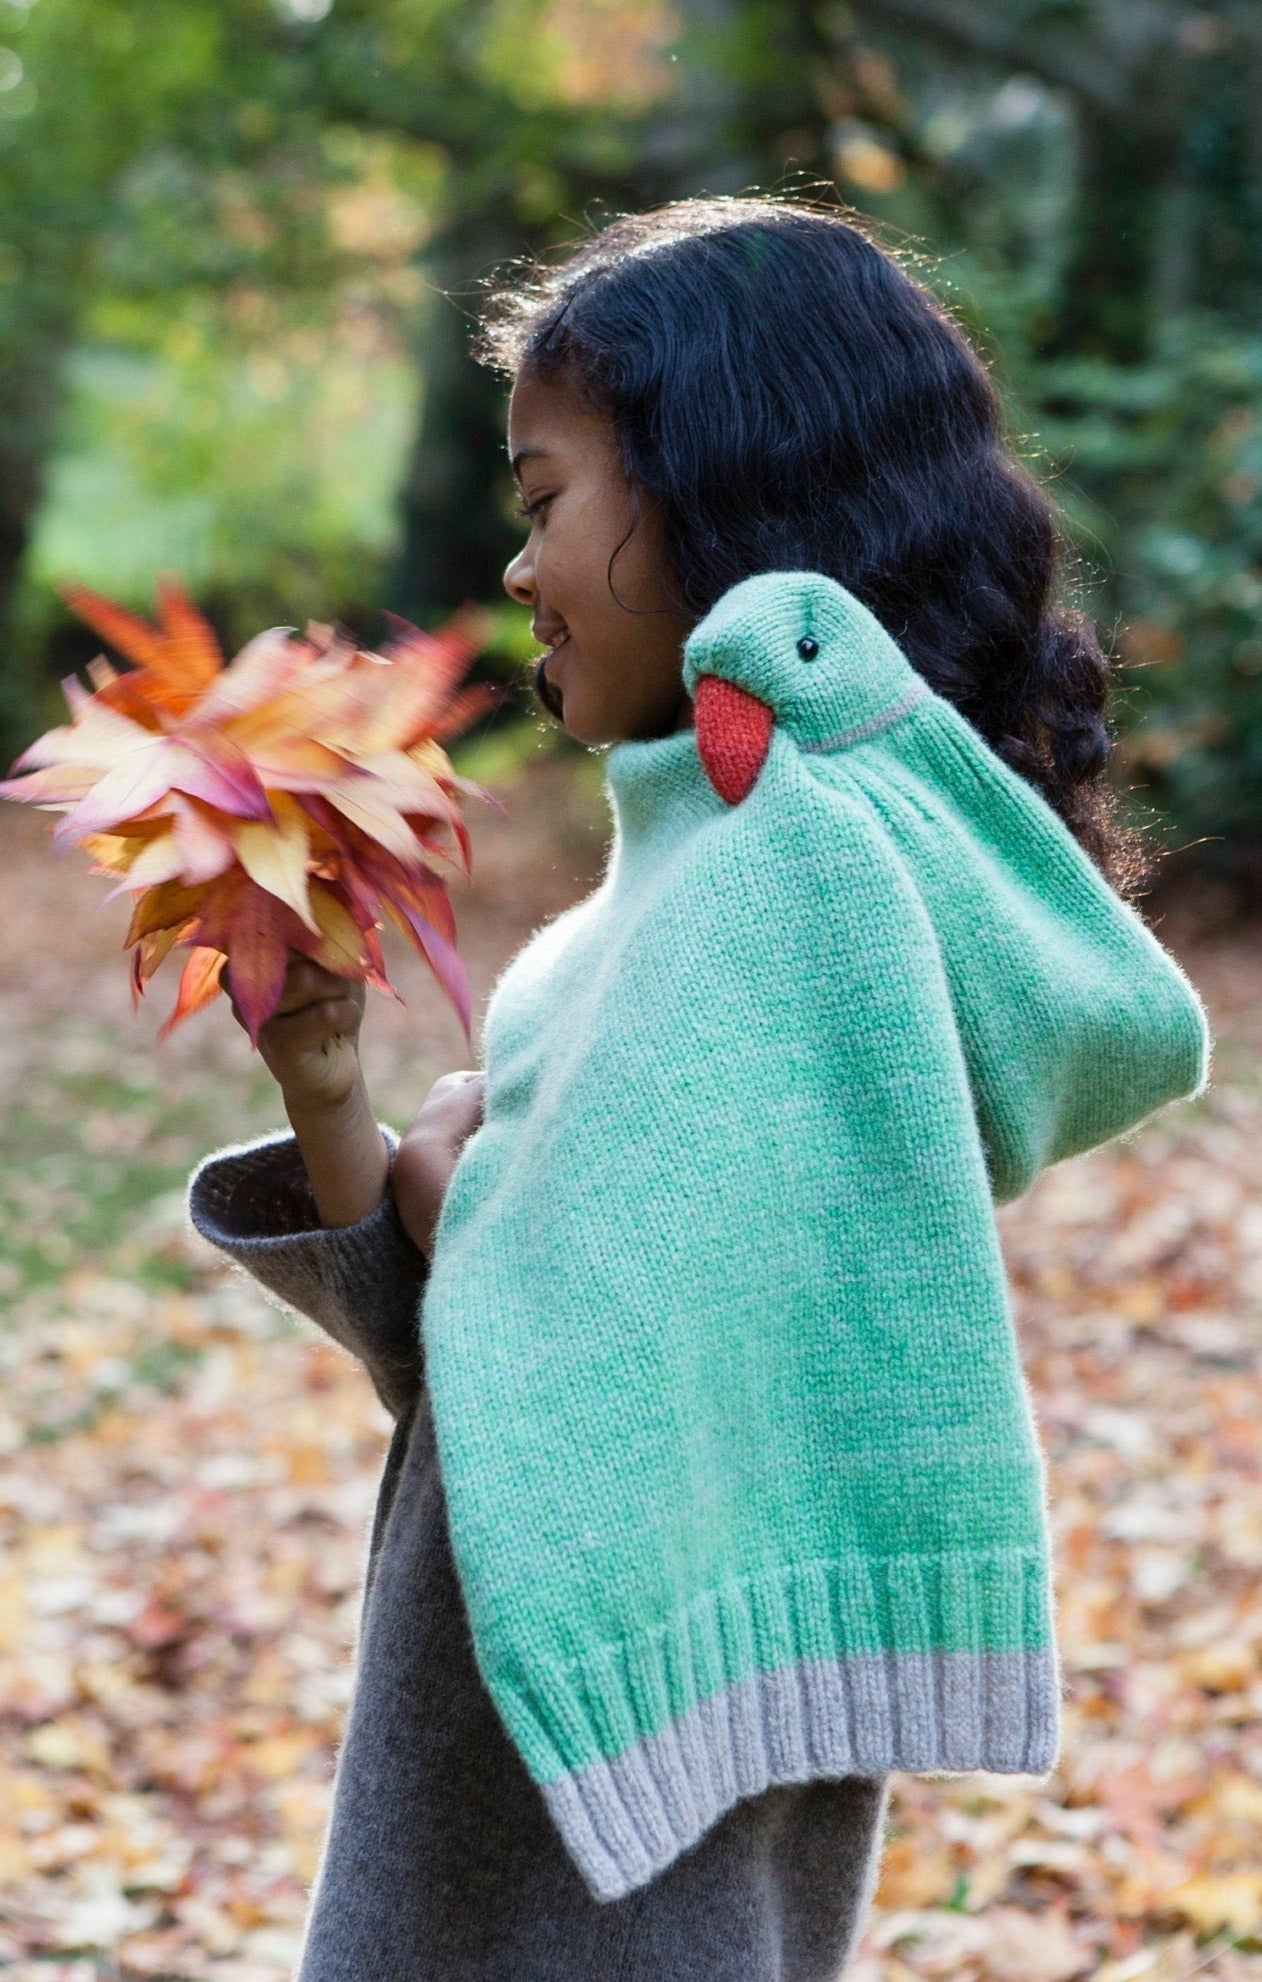 Rose-ringed Parakeet scarf for kids